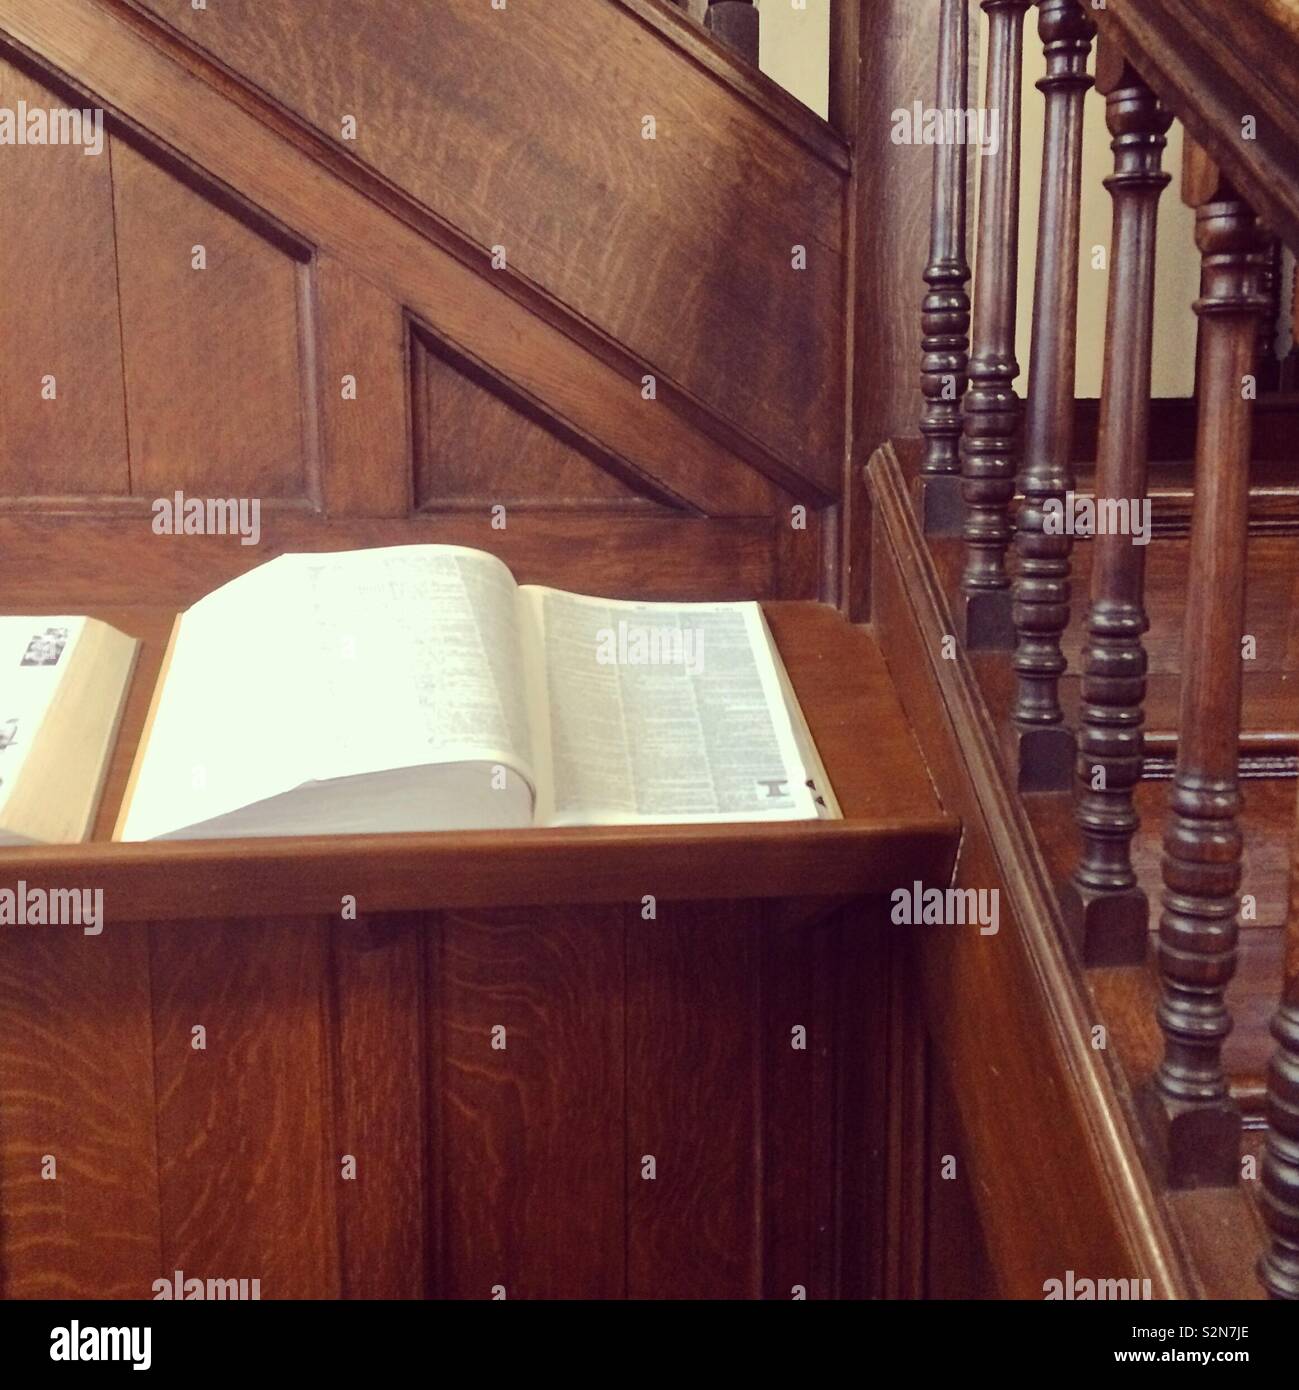 Referenz Buch inmitten Holzarbeiten in einer Bibliothek öffnen Stockfoto